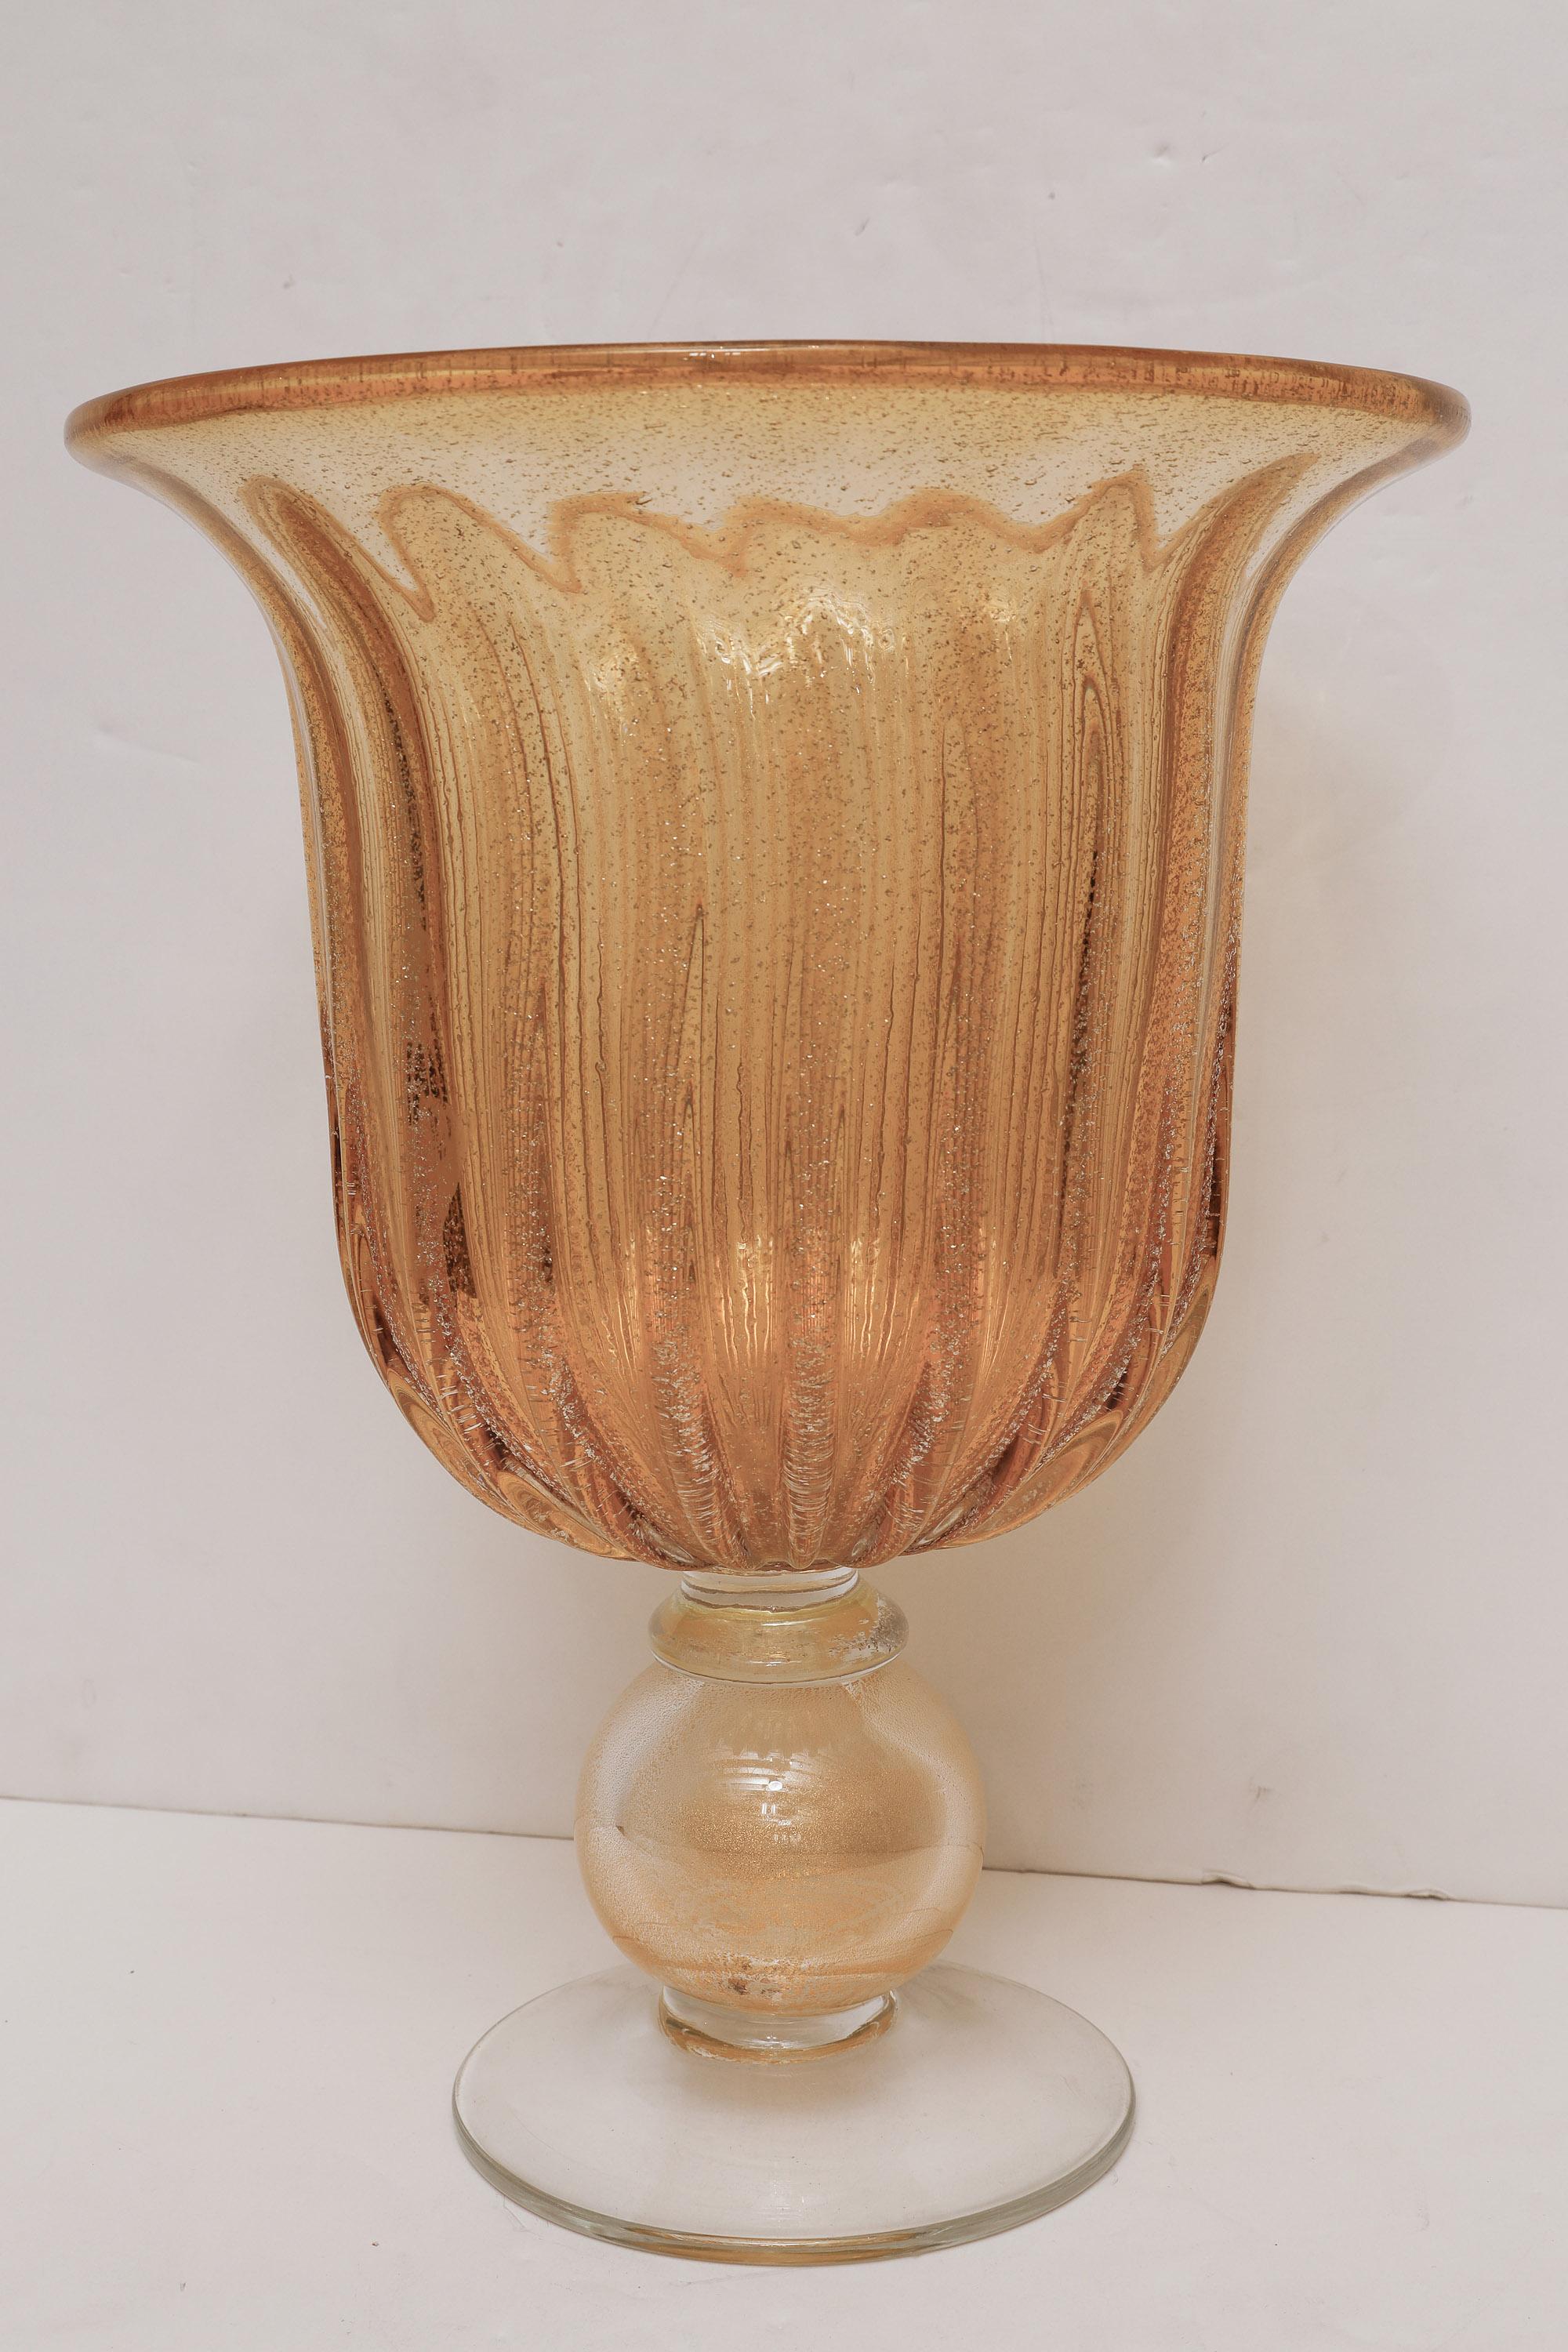 Wunderschöne mundgeblasene, geriffelte Murano-Vase im Stil von Angelo Seguso aus bernsteinfarbenem und klarem Glas mit Goldstaub und funkelnden Einschlüssen.
Groß im Maßstab - perfektes Statement!.